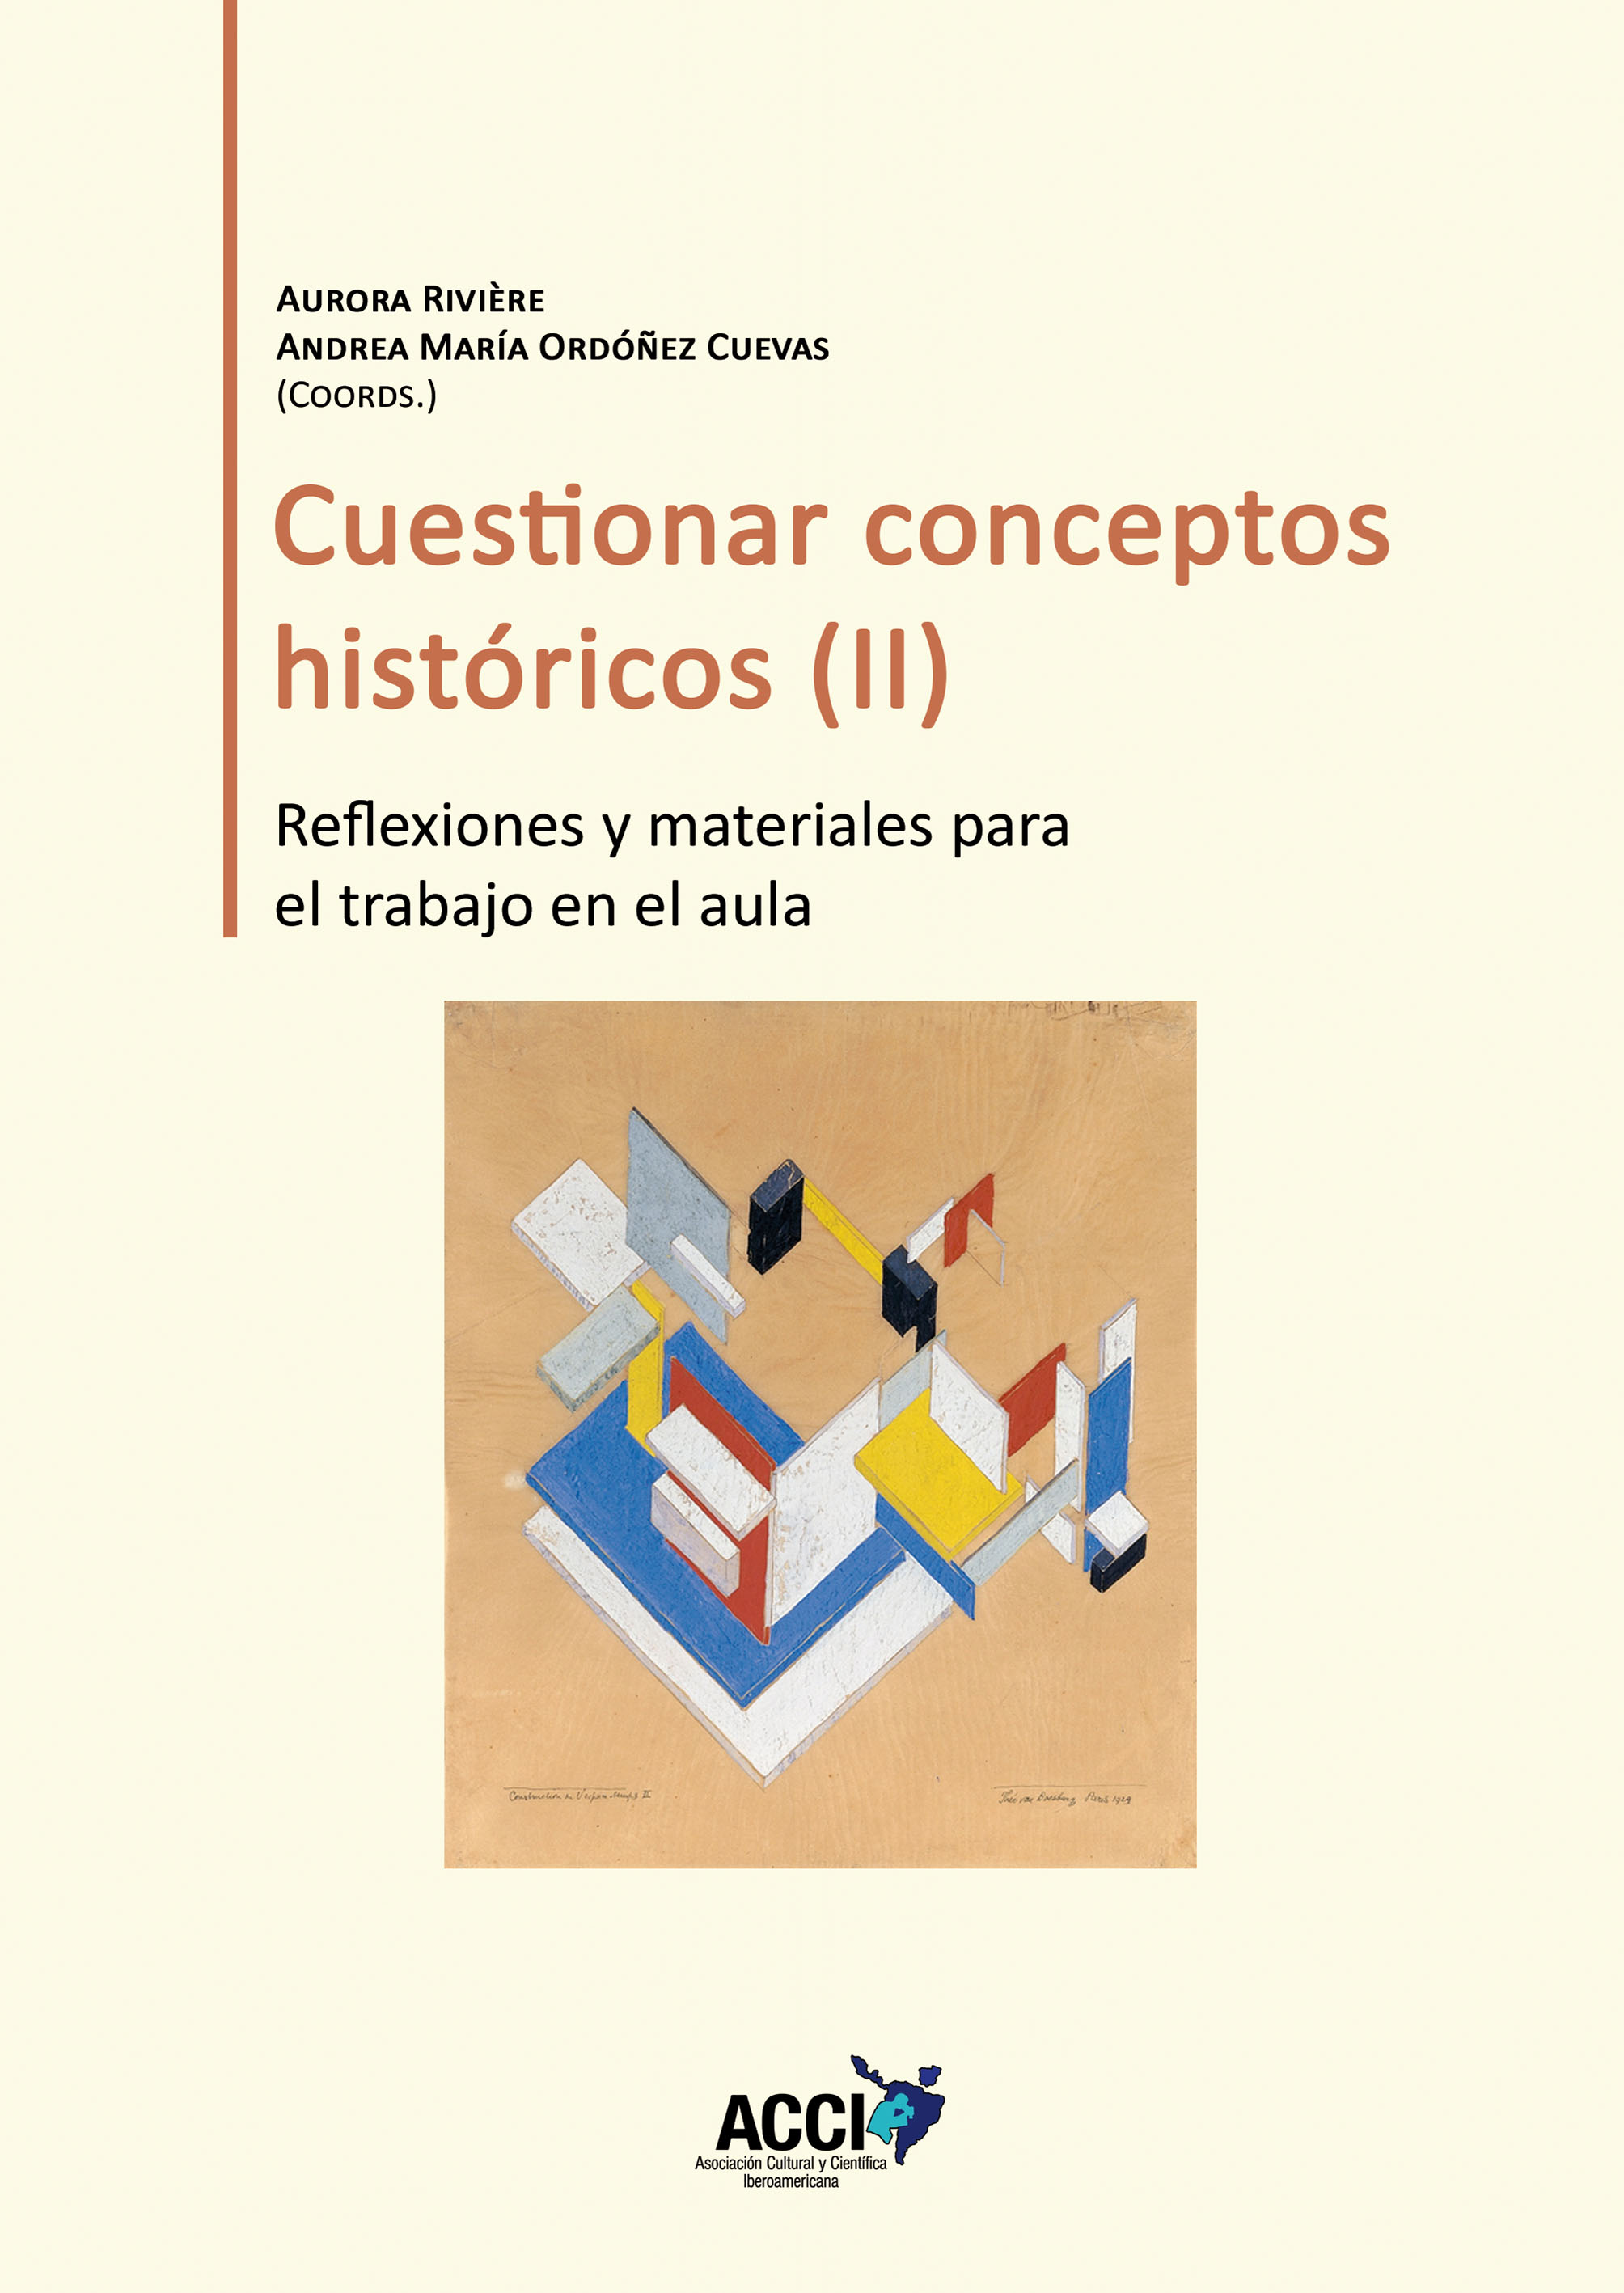 Cuestionar conceptos históricos (II)